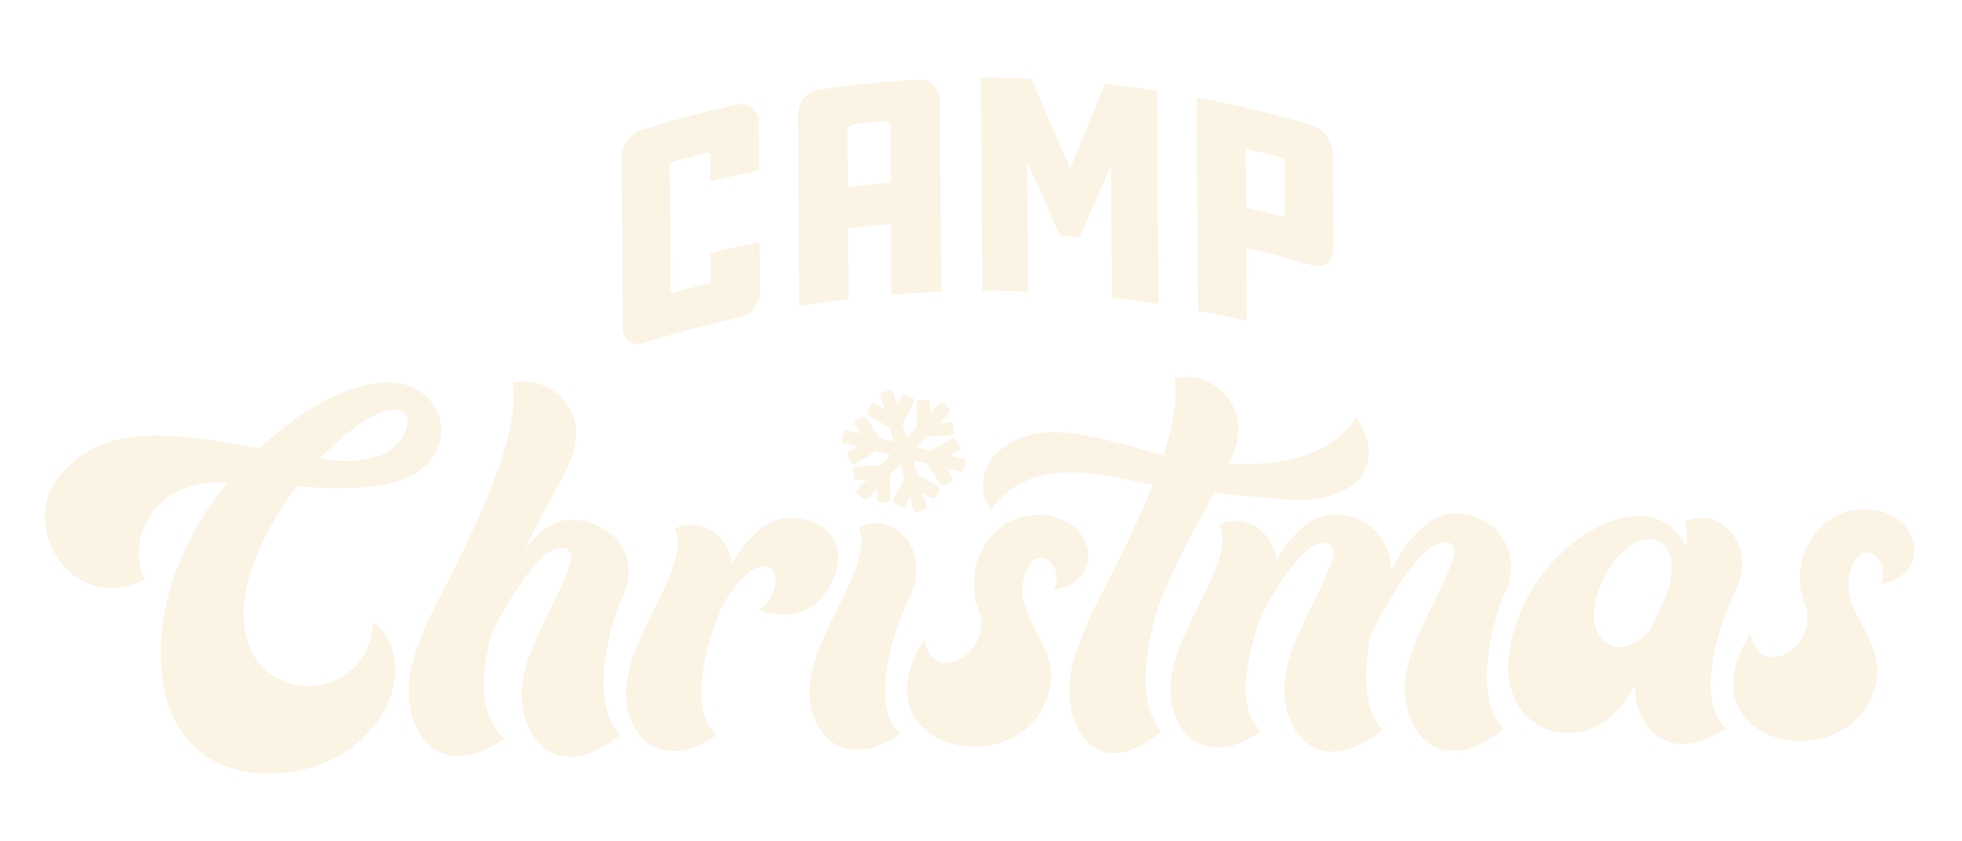 Camp Christmas